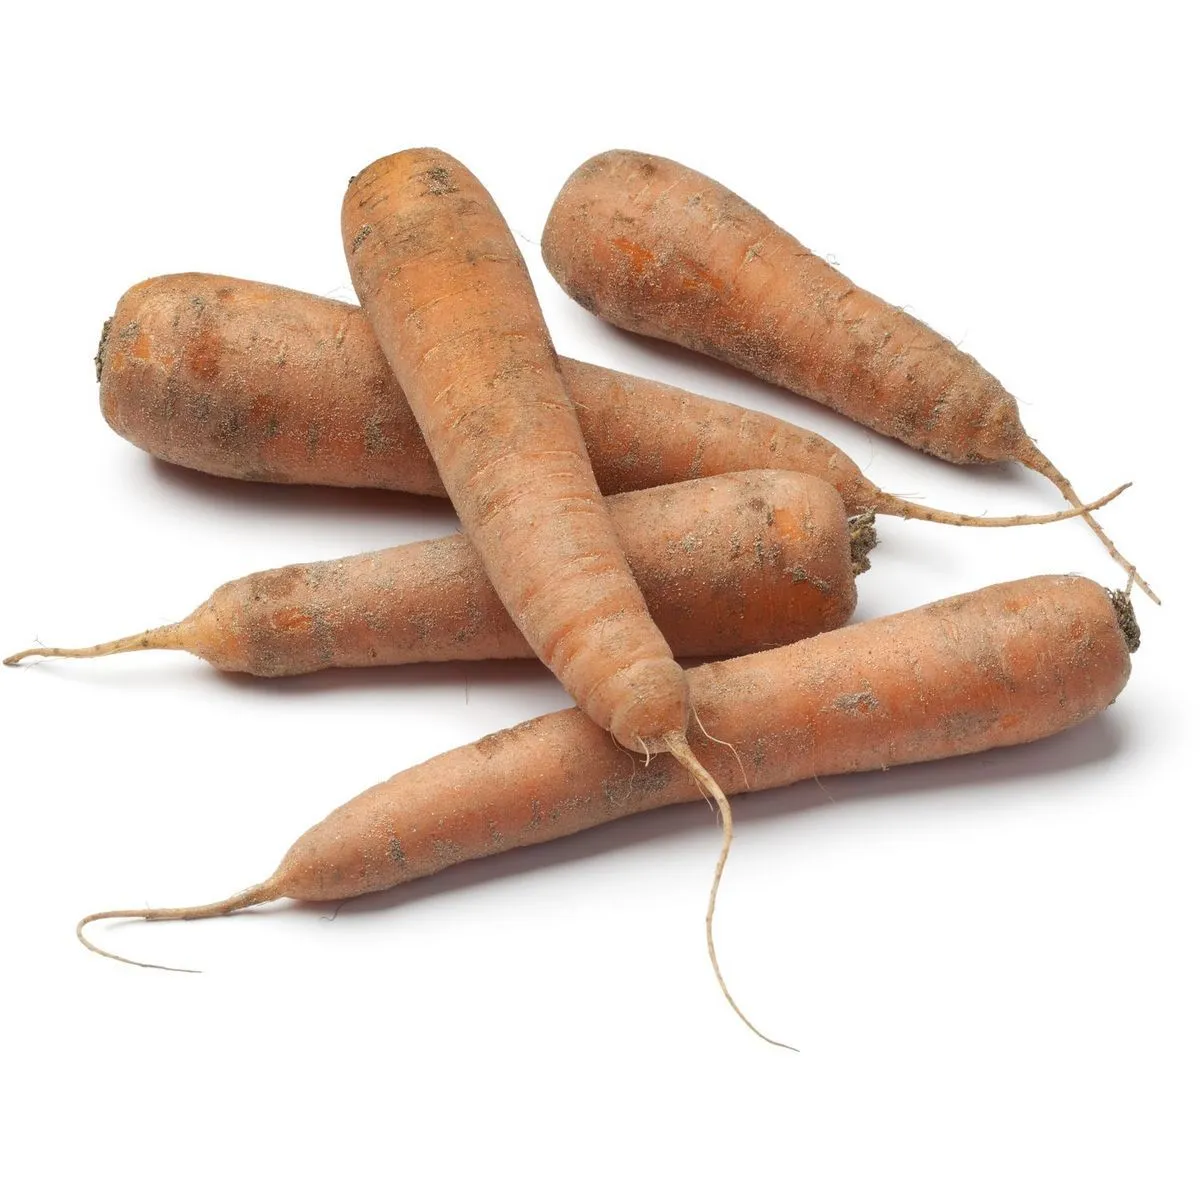 carottes des sables filière auchan cultivons le bon